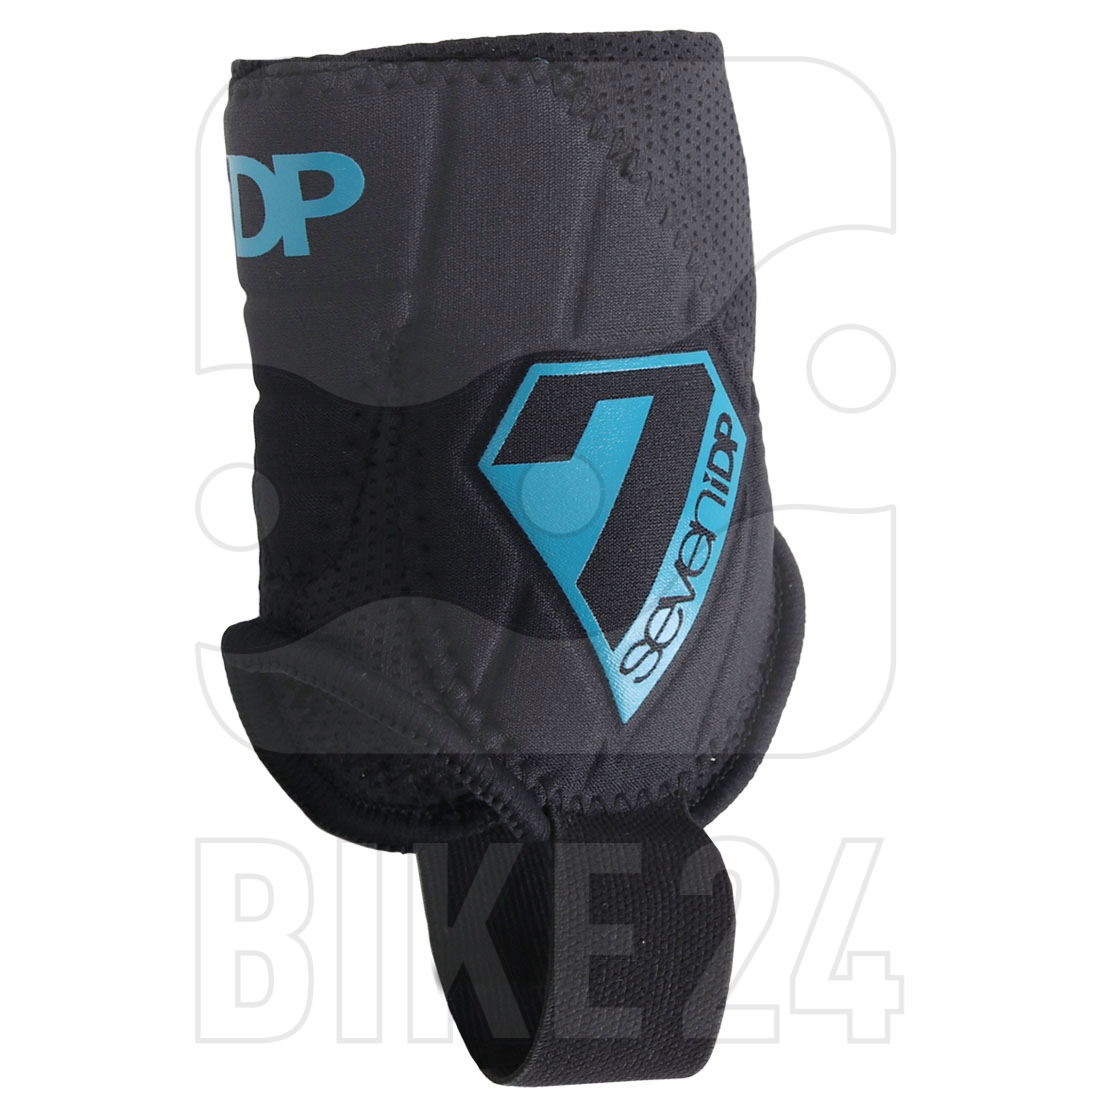 Produktbild von 7 Protection 7iDP Control Knöchelschoner - schwarz-blau